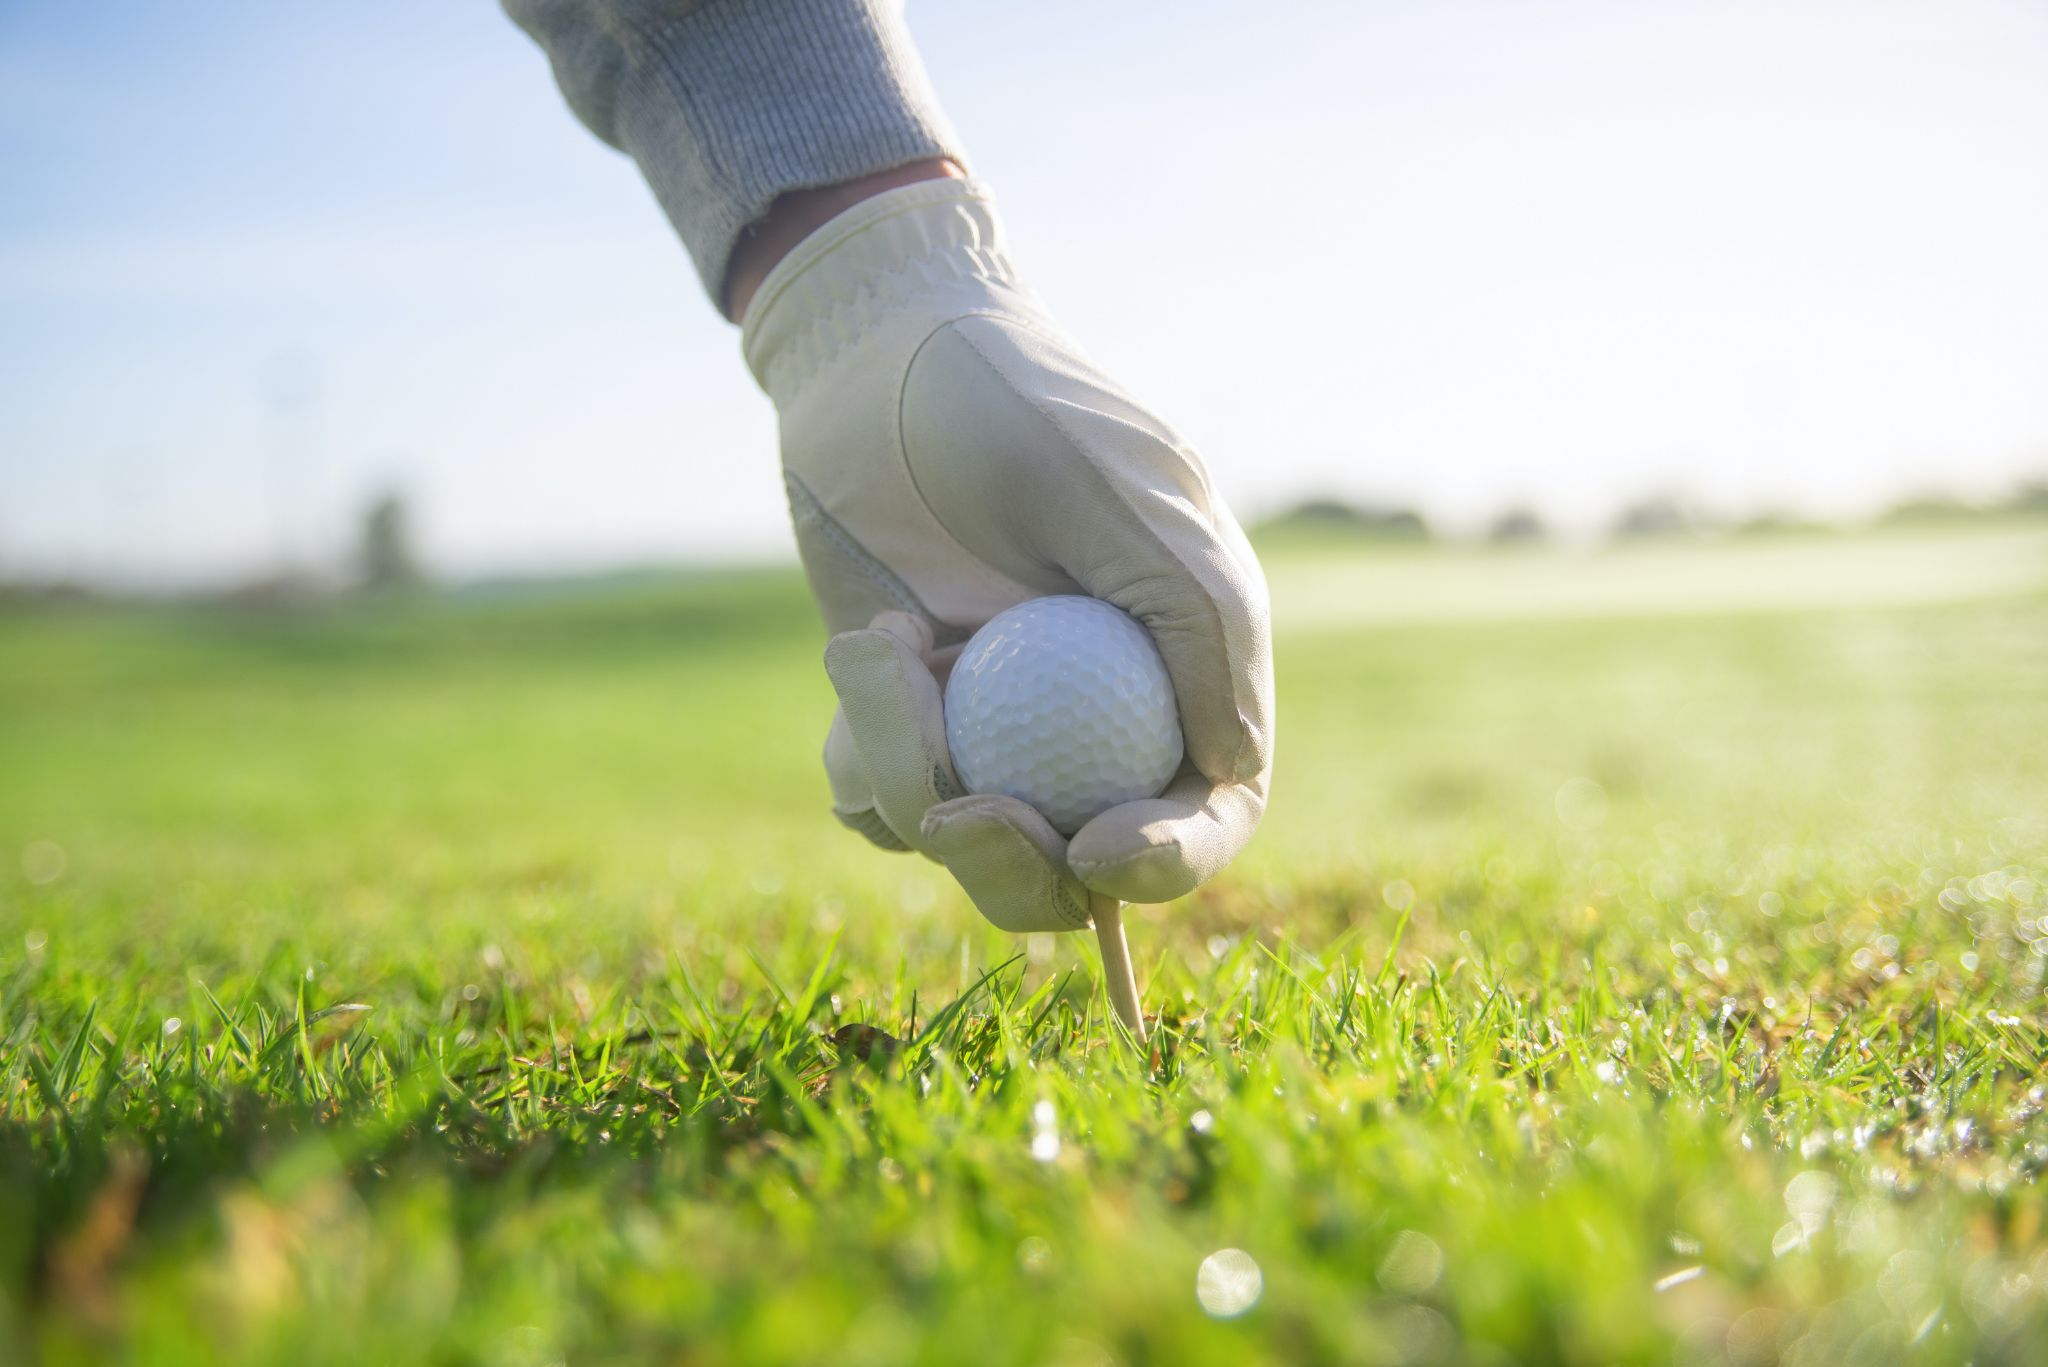 A golf ball on green grass